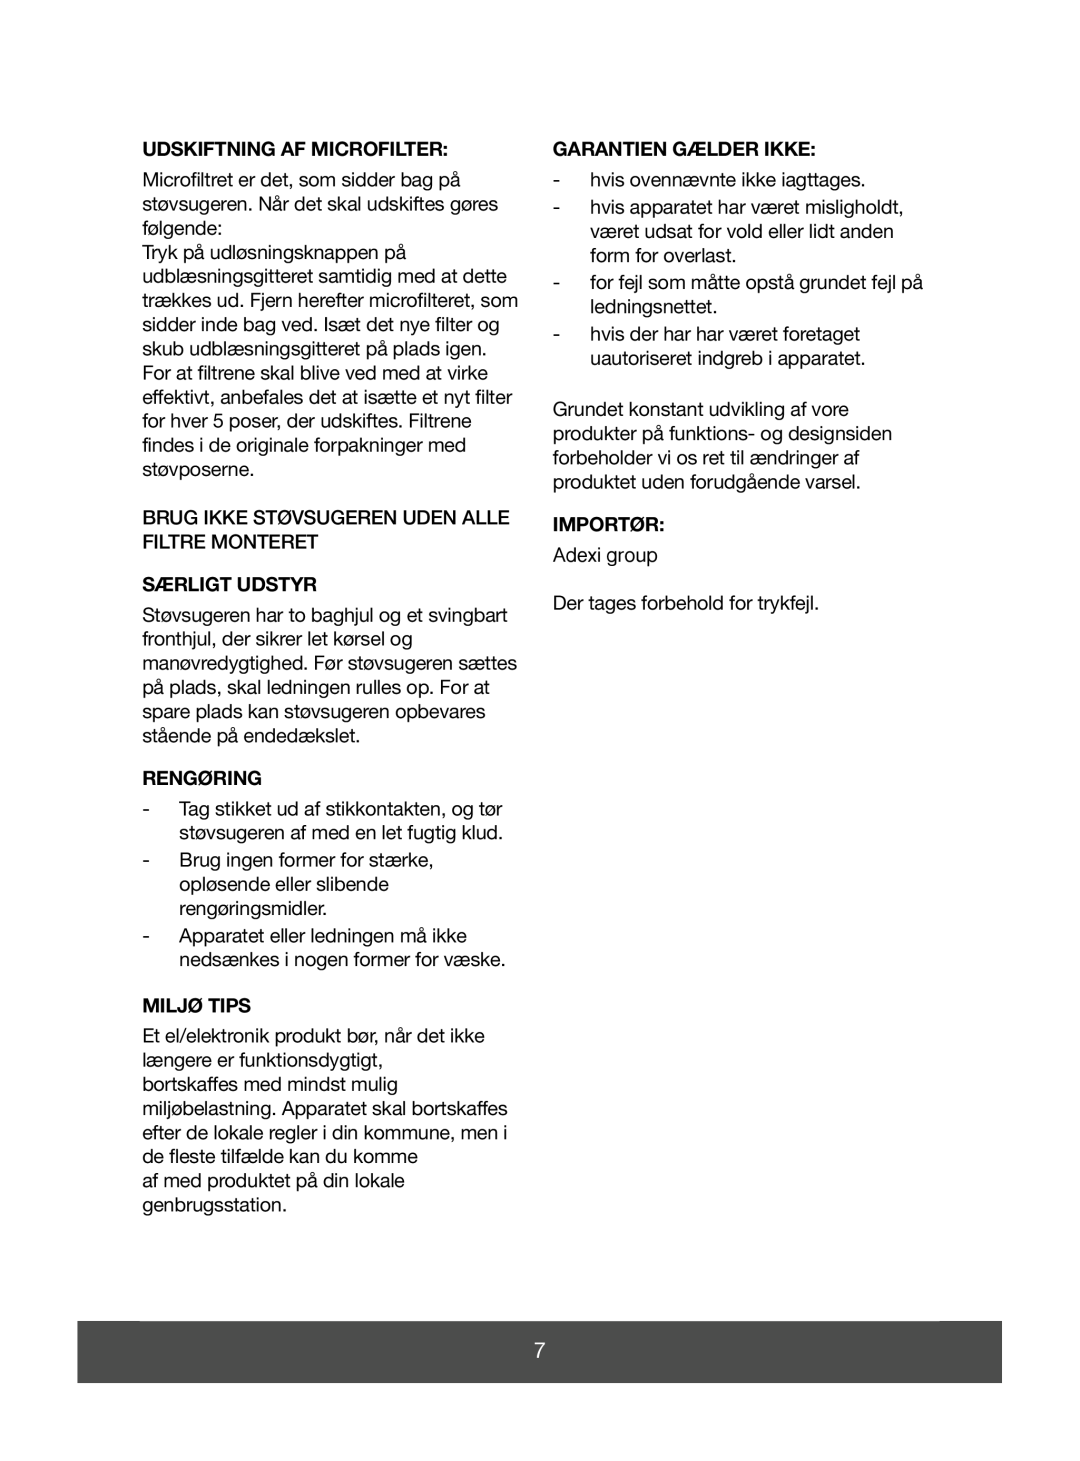 Melissa 640-043 manual Udskiftning Af Microfilter, Særligt Udstyr, Rengøring, Miljø Tips, Garantien Gælder Ikke, Importør 